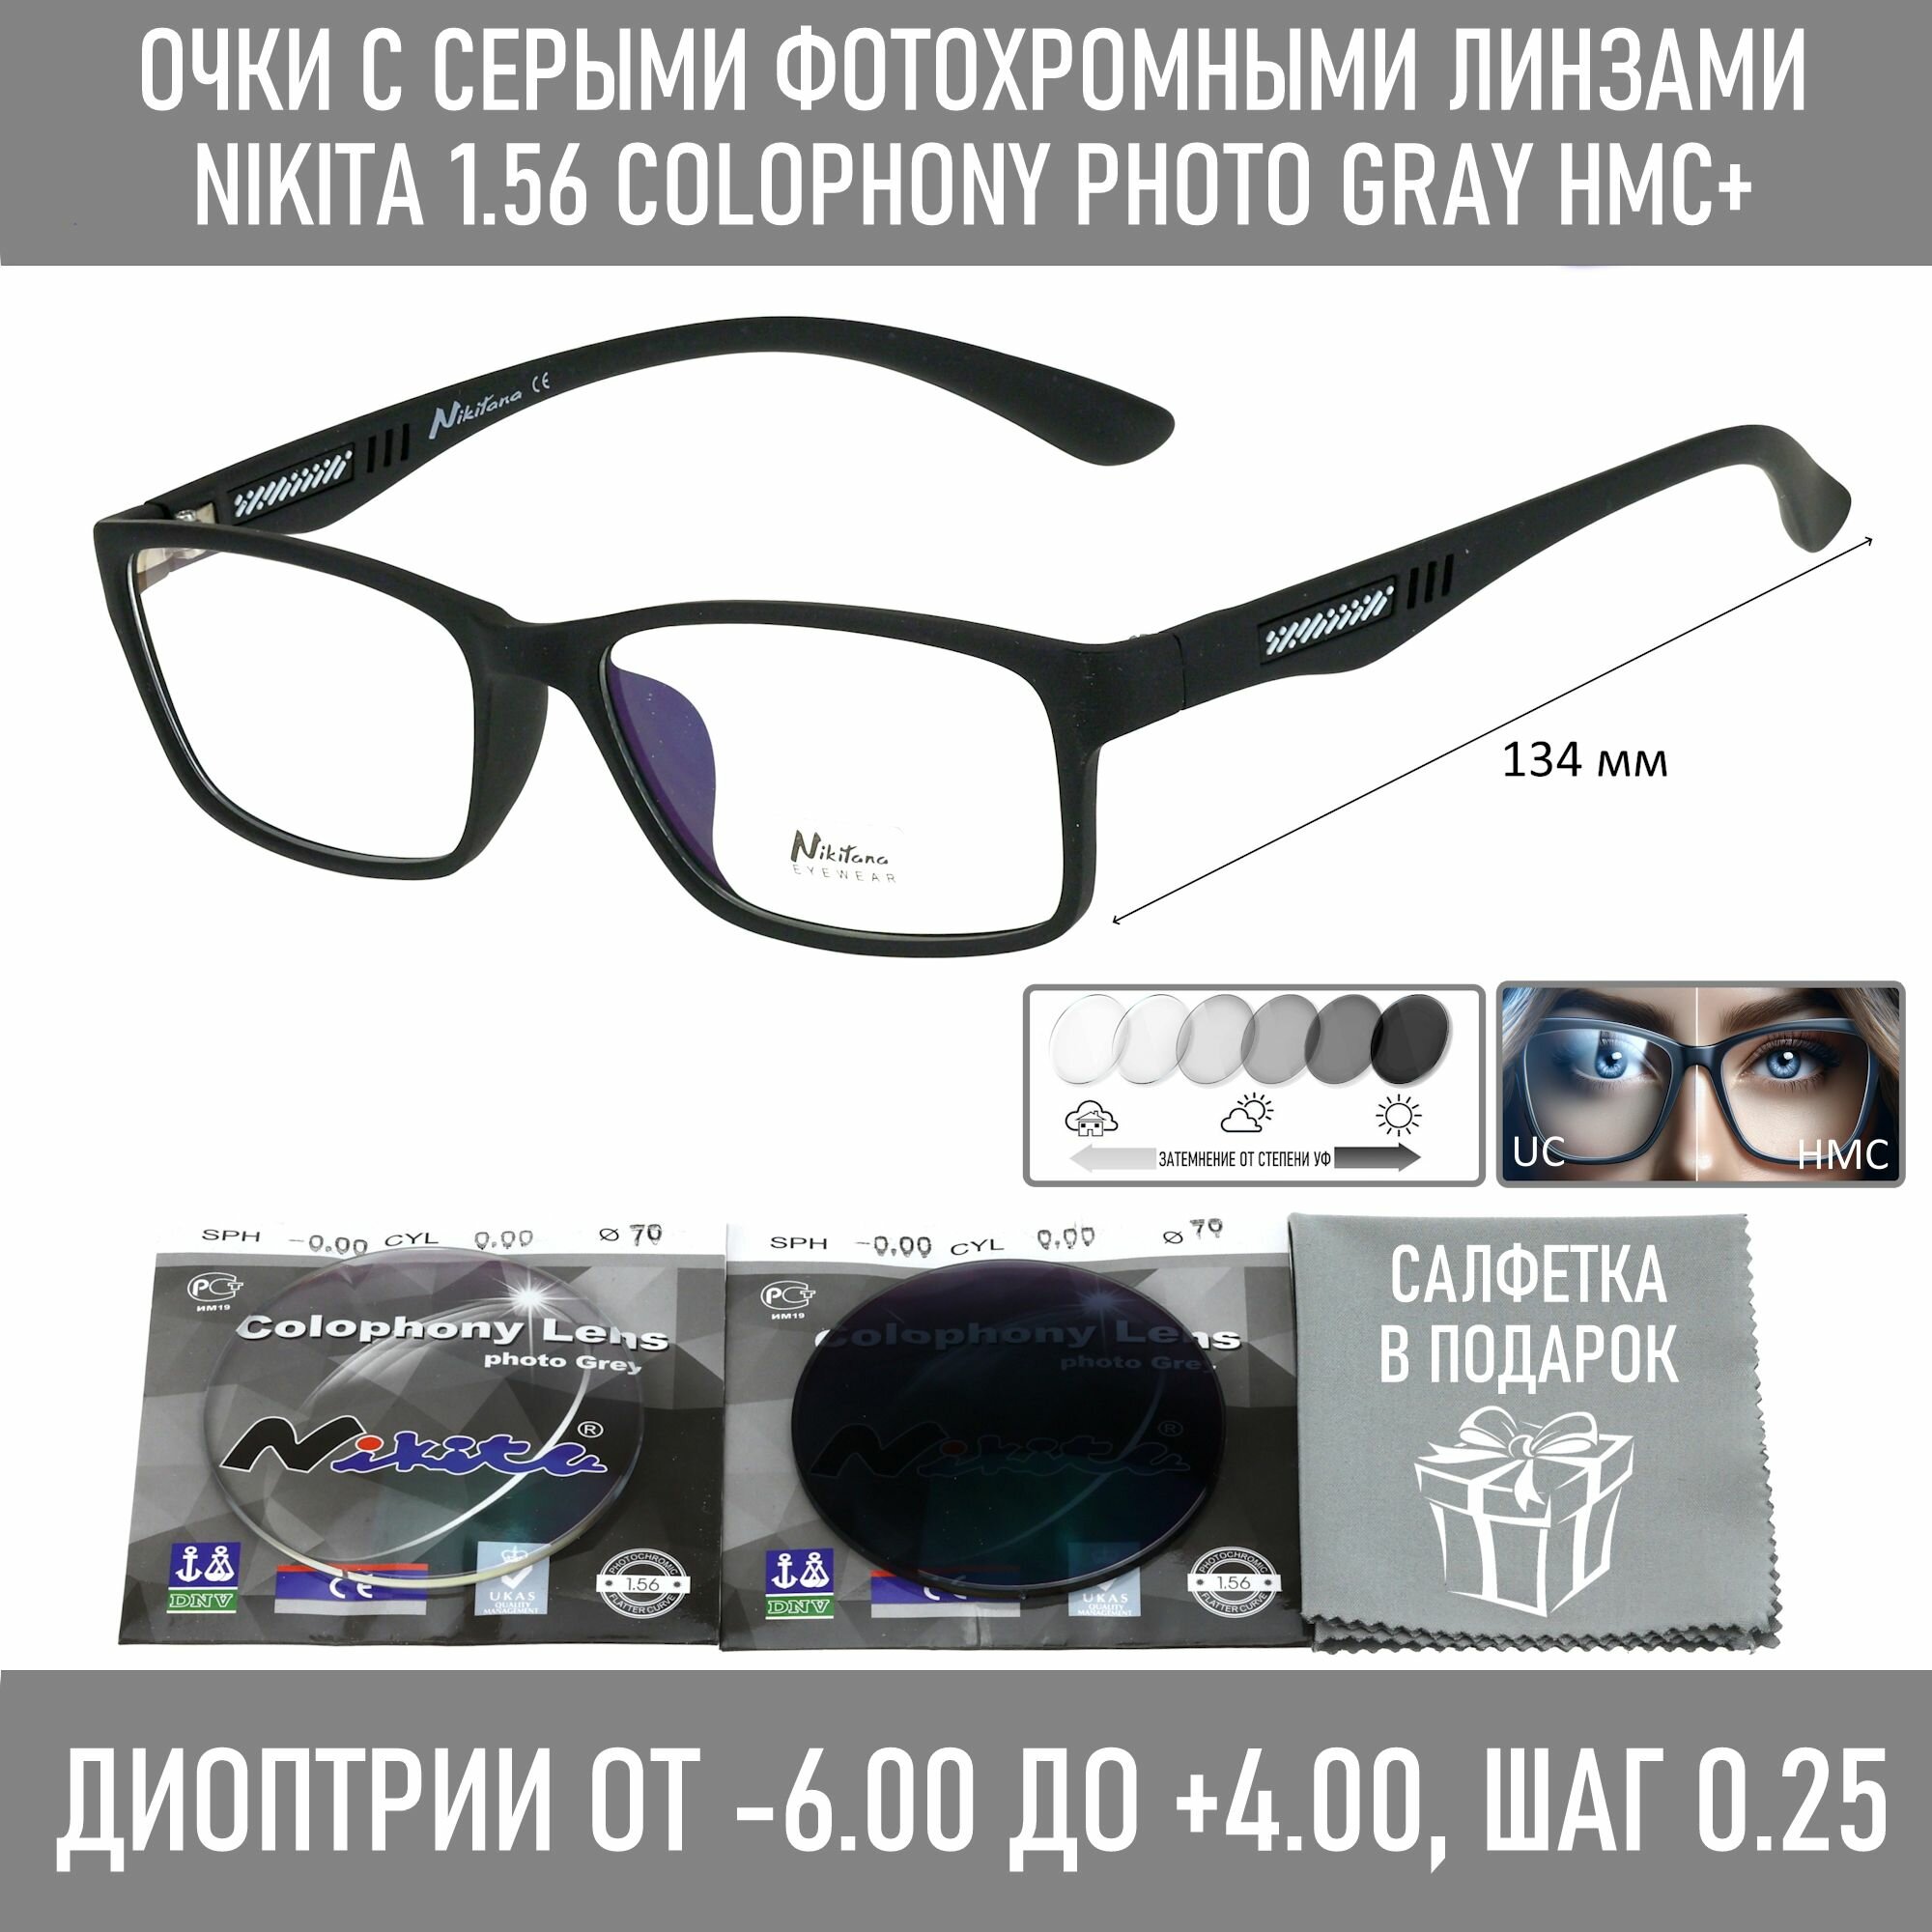 Фотохромные очки для зрения NIKITANA мод. 3811 Цвет 3 с линзами NIKITA 1.56 Colophony GRAY, HMC+ -3.00 РЦ 58-60